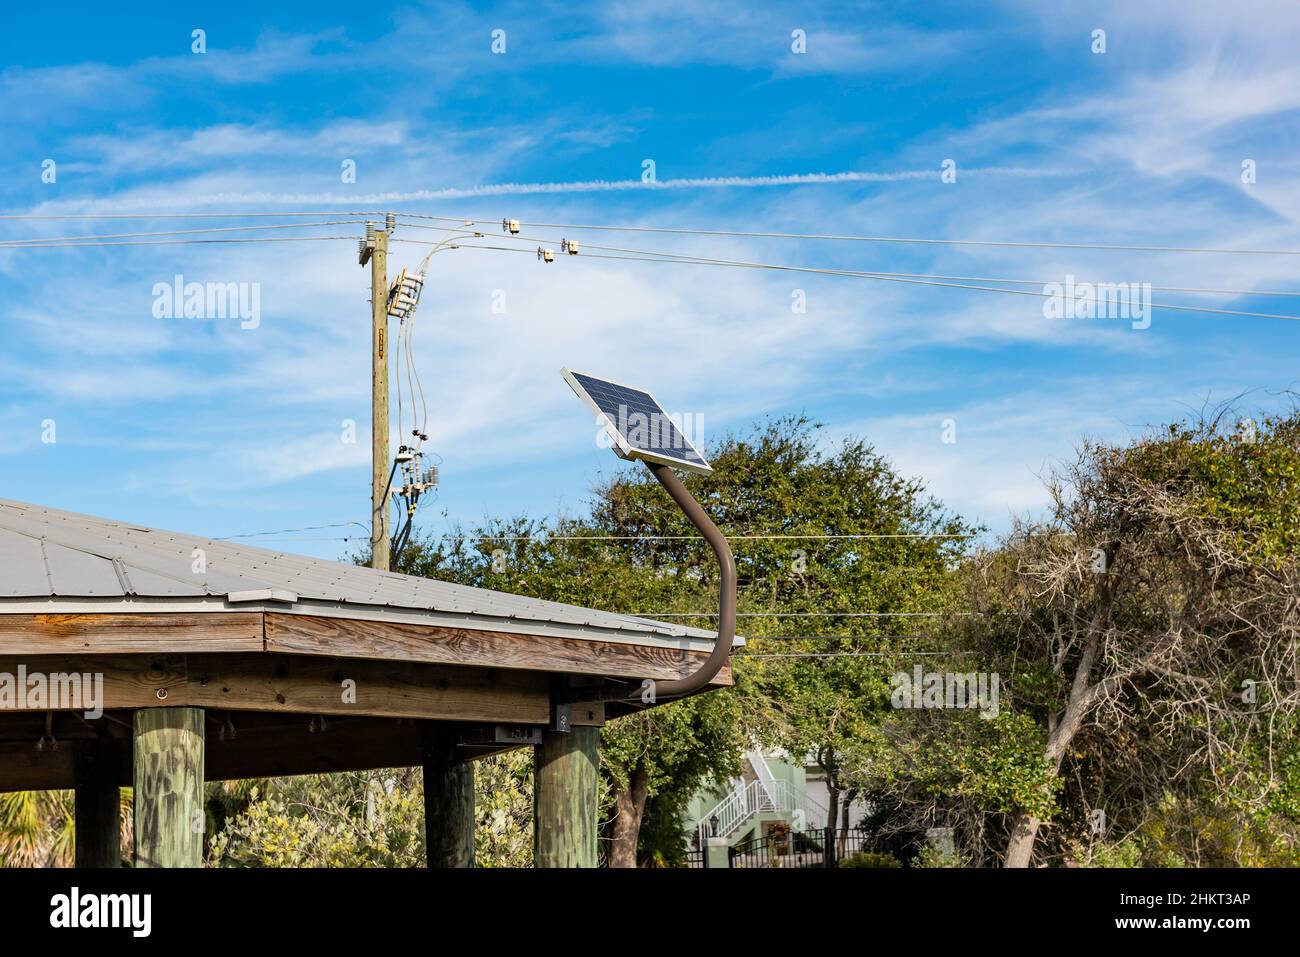 Un piccolo pannello solare fissato al tetto di un padiglione del parco è giustapposto contro un polo elettrico e fili. Foto Stock